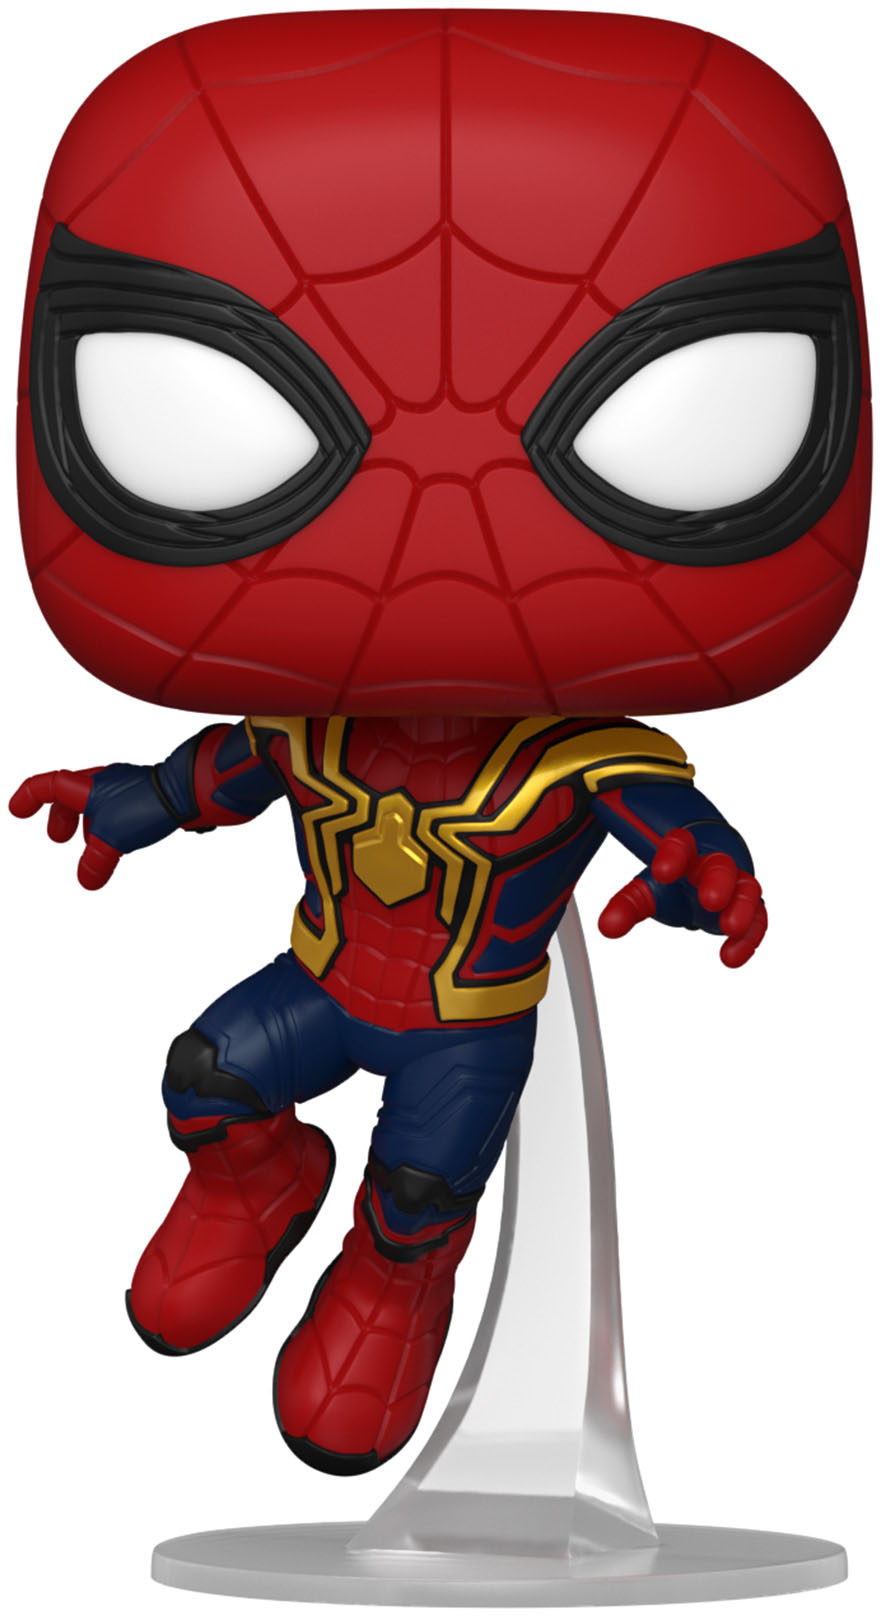 Funko POP Marvel: Spider-Man: No Way Home Spider-Man 67606 - Best Buy